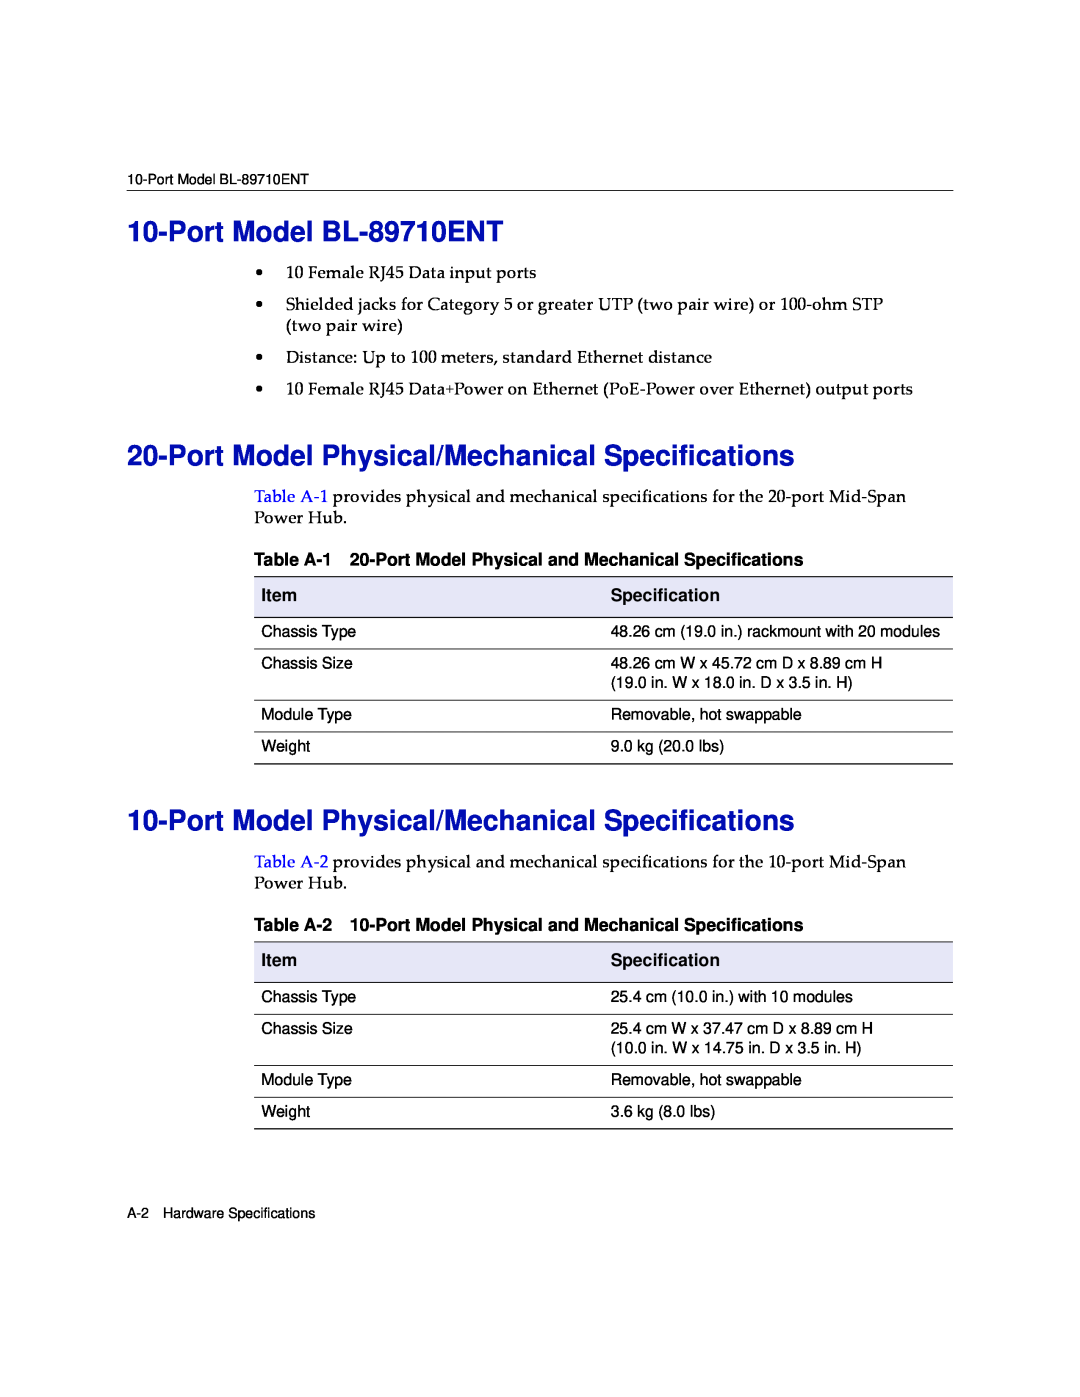 Enterasys Networks BL-89720ENT, BL-89520ENT manual Port Model BL-89710ENT, Port Model Physical/Mechanical Specifications 